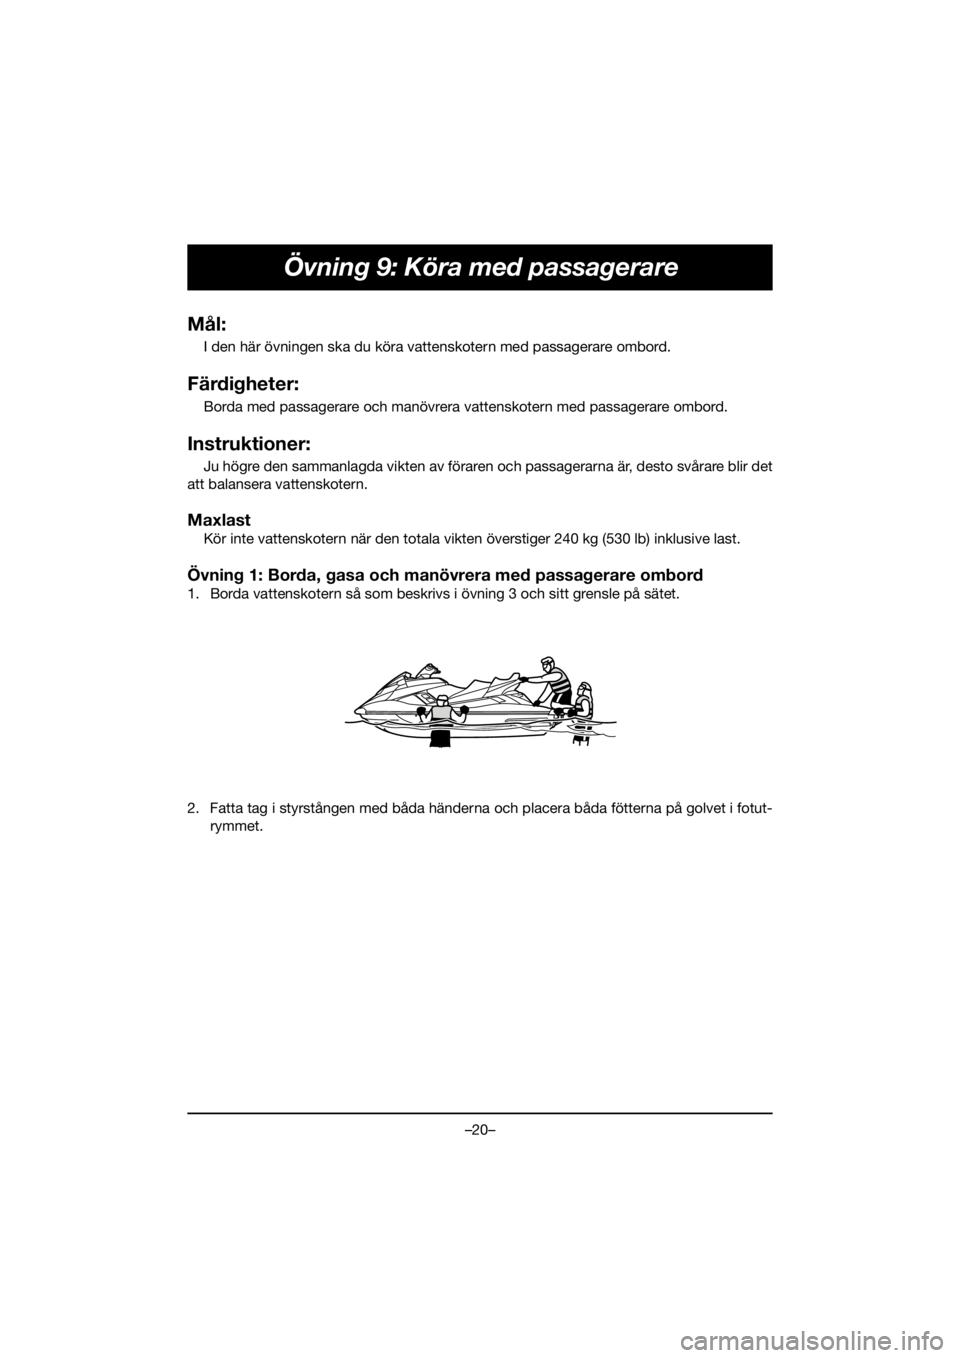 YAMAHA FX HO 2019  Manuale de Empleo (in Spanish) –20–
Övning 9: Köra med passagerare
Mål:
I den här övningen ska du köra vattenskotern med passagerare ombord.
Färdigheter:
Borda med passagerare och manövrera vattenskotern med passagerare